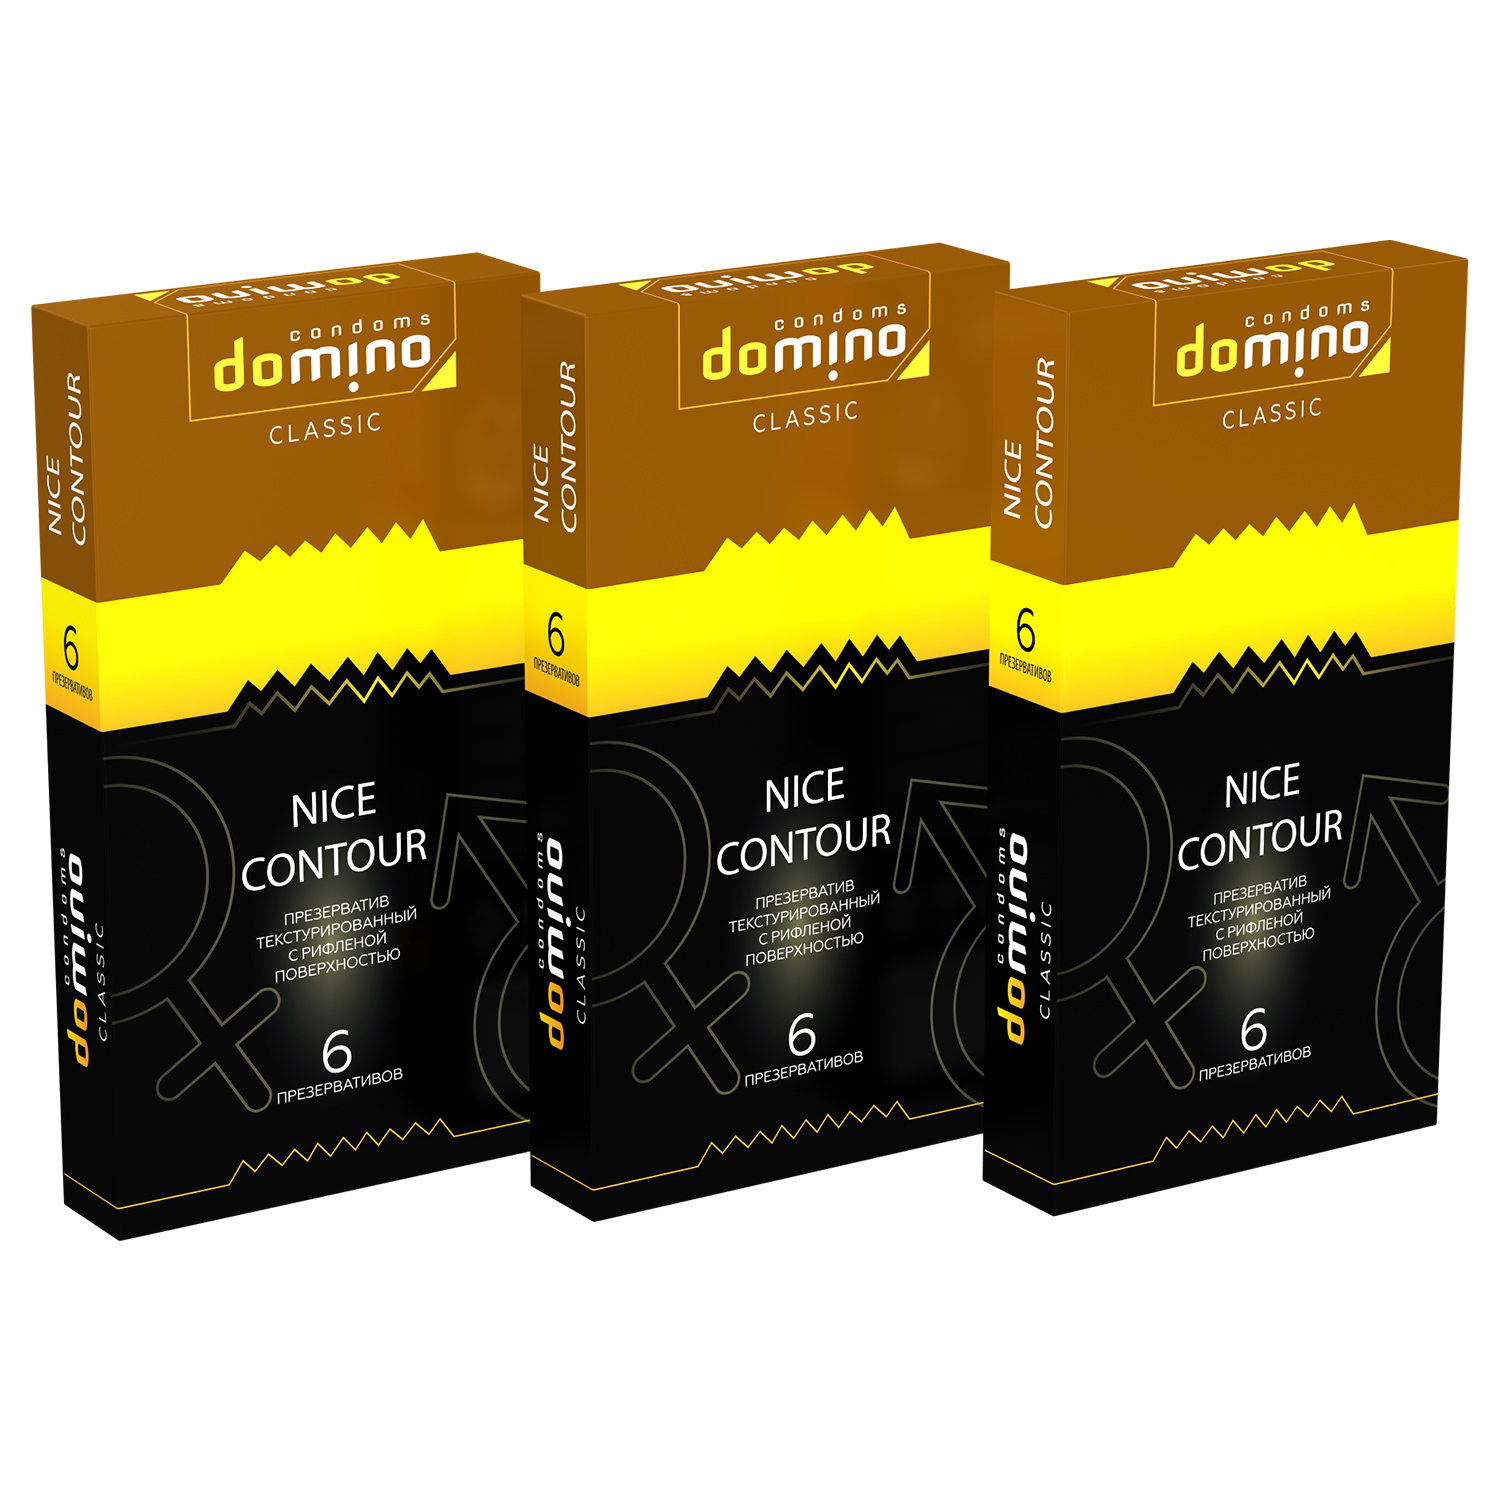 Купить Презервативы Domino Classic Nice Contour 6 шт комплект из 3 пачек, Luxe